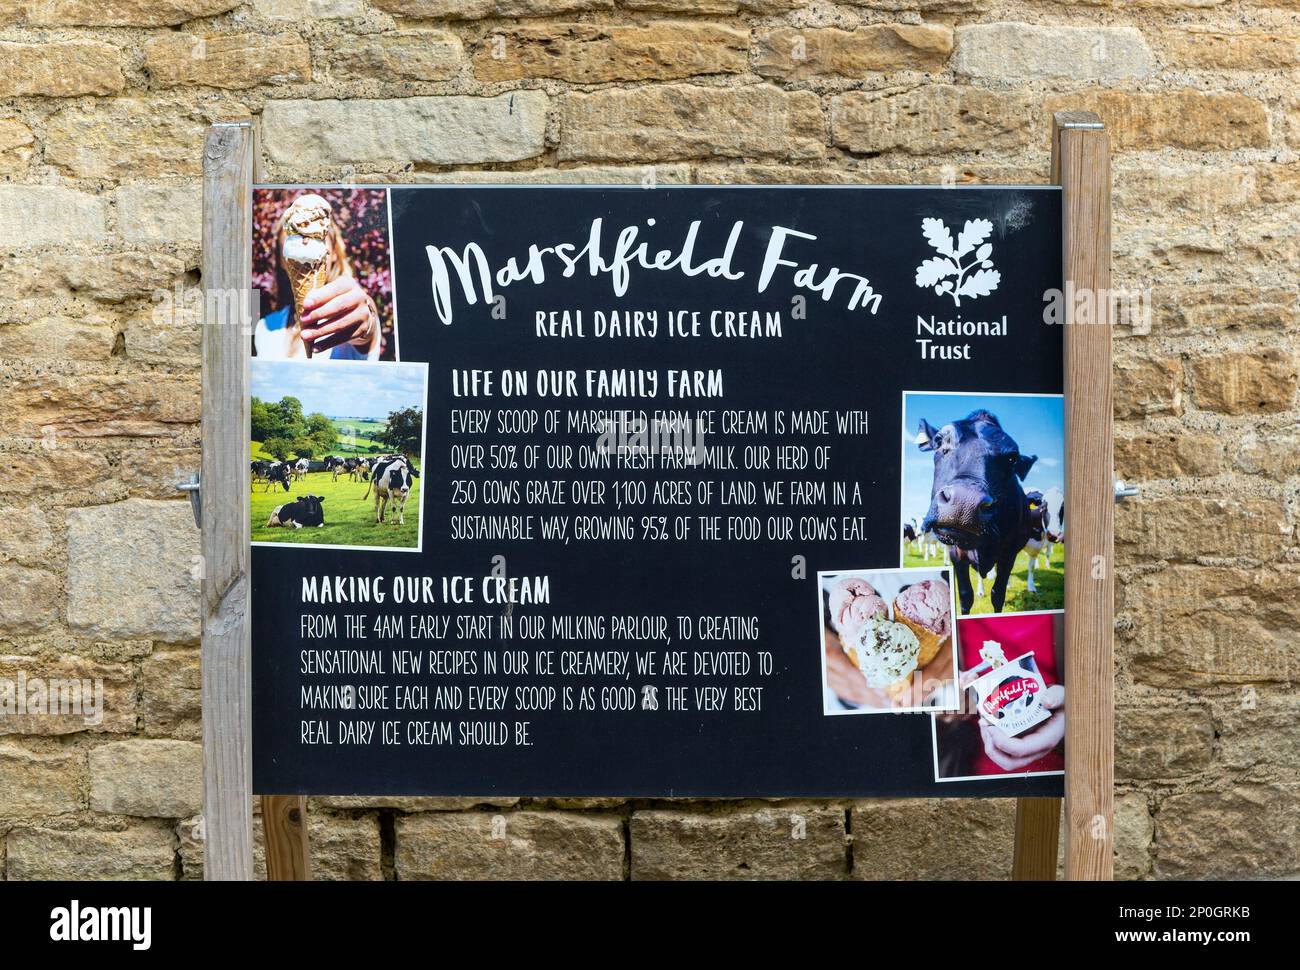 National Trust segno pubblicitario per Marshfield farm real lattery Ice cream, Lacock, Wiltshire, Inghilterra, Regno Unito Foto Stock